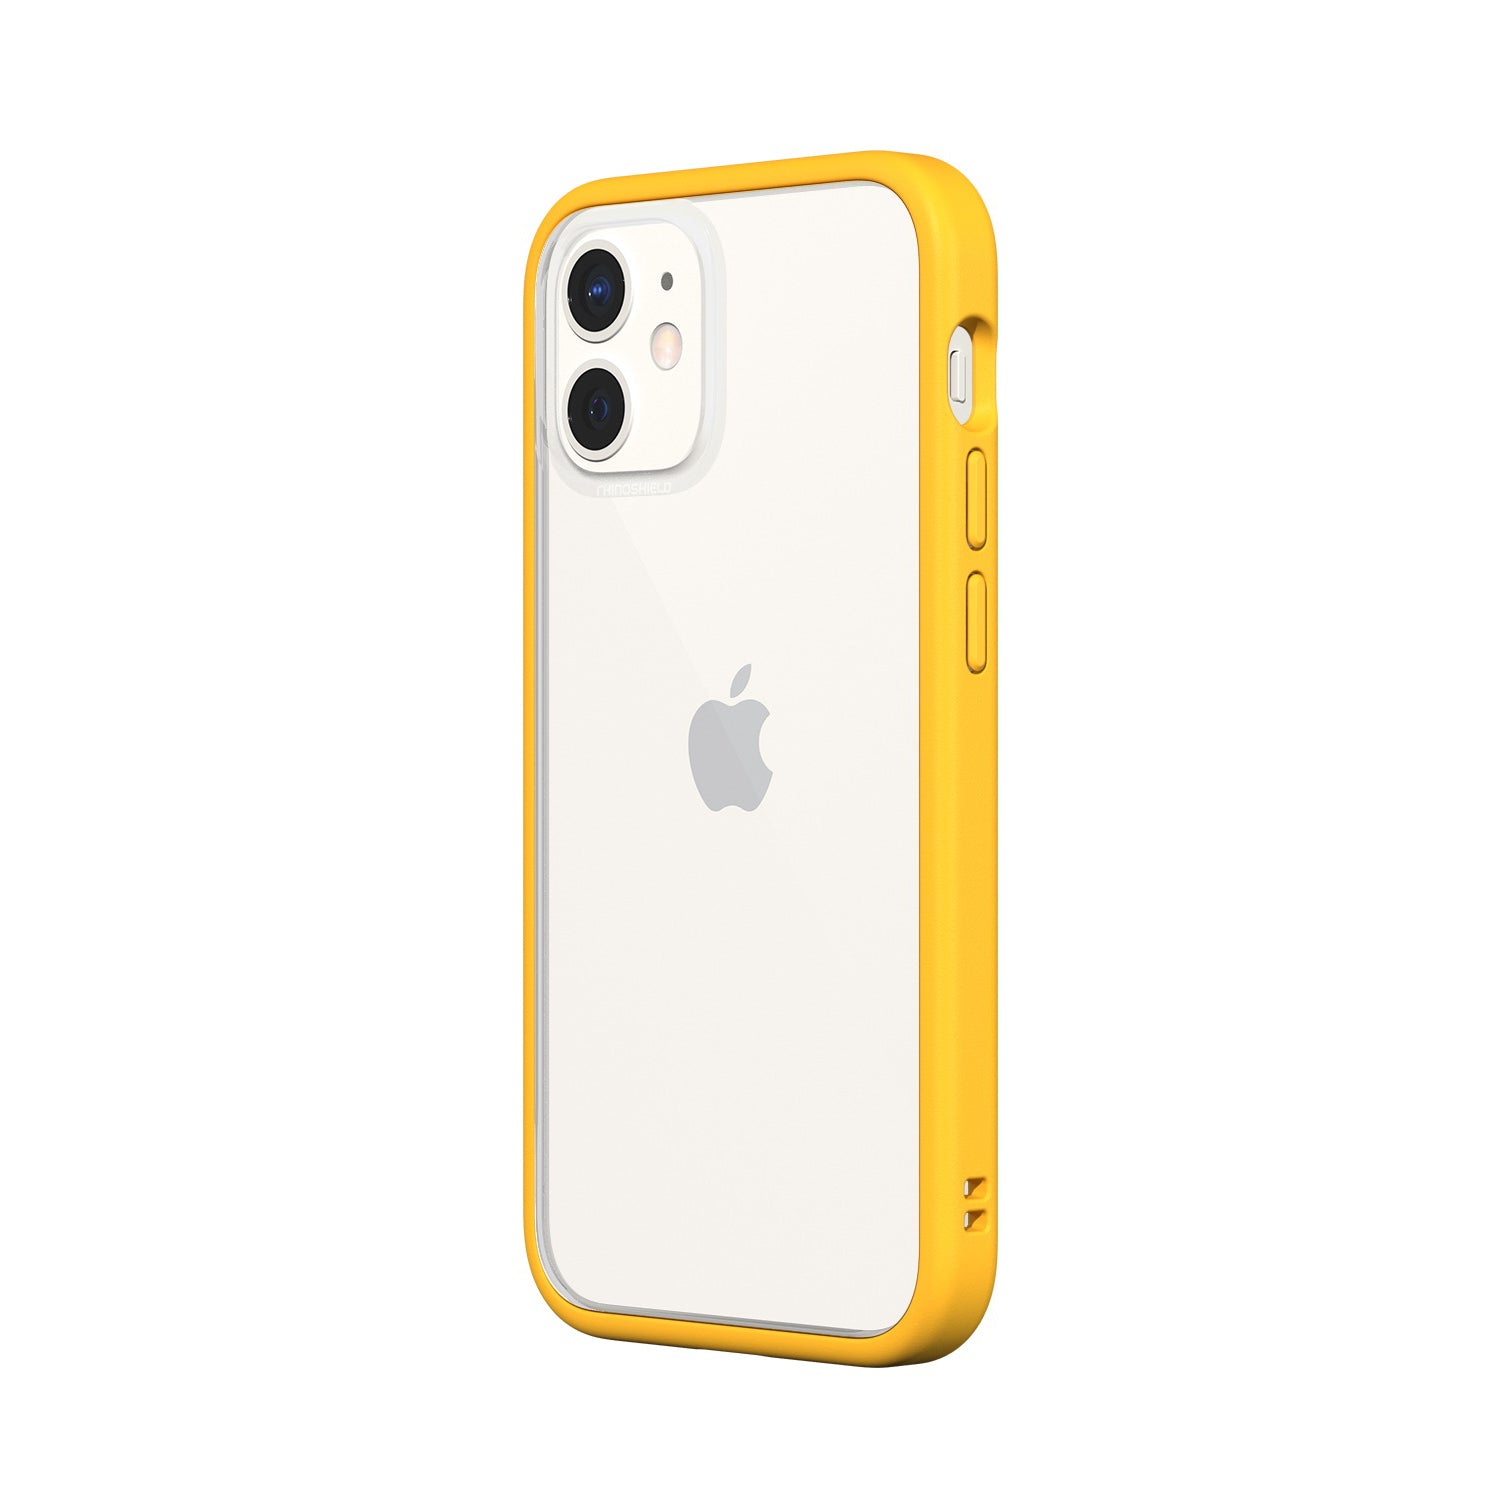 RhinoShield MOD NX 2-in-1 Case For iPhone 12 mini - Yellow - Mac Addict